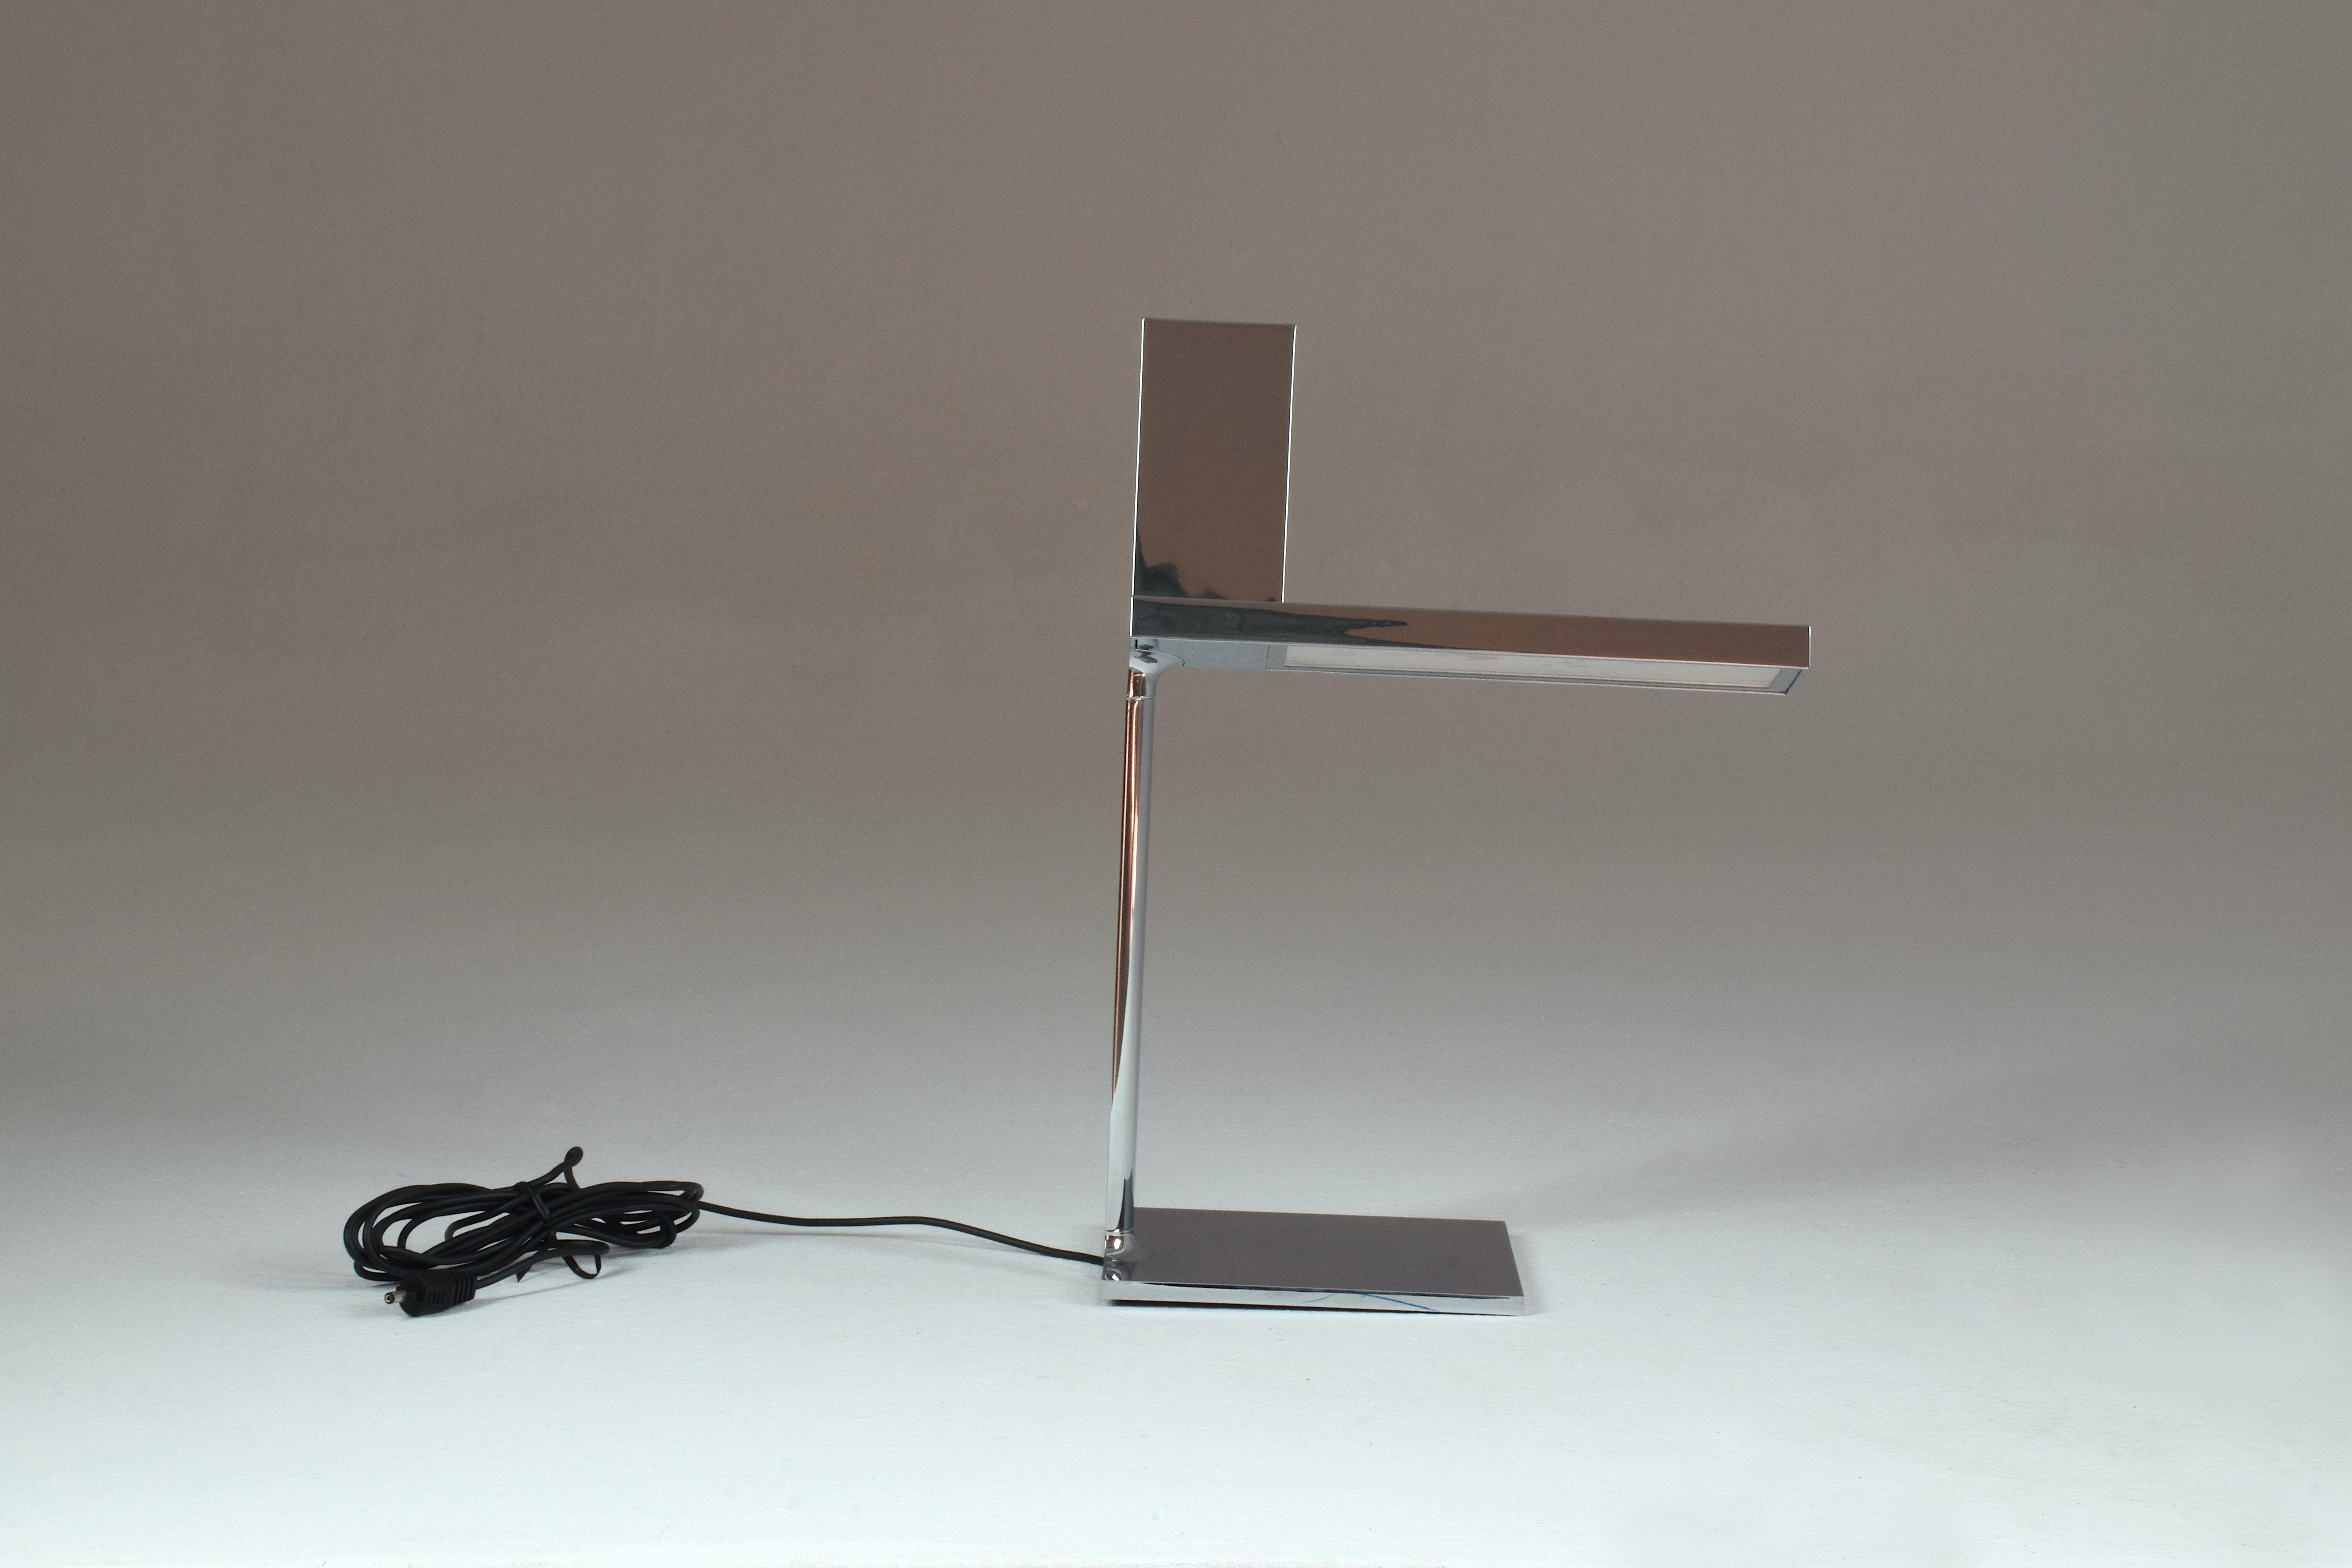 La lampe d'espace de travail italienne D'e-light de Philippe Starck pour Flos présente un design épuré, moderne et multifonctionnel. Ce Design-Light dispose d'un espace sur le dessus pour ranger et charger tout type d'appareil tel que téléphone,